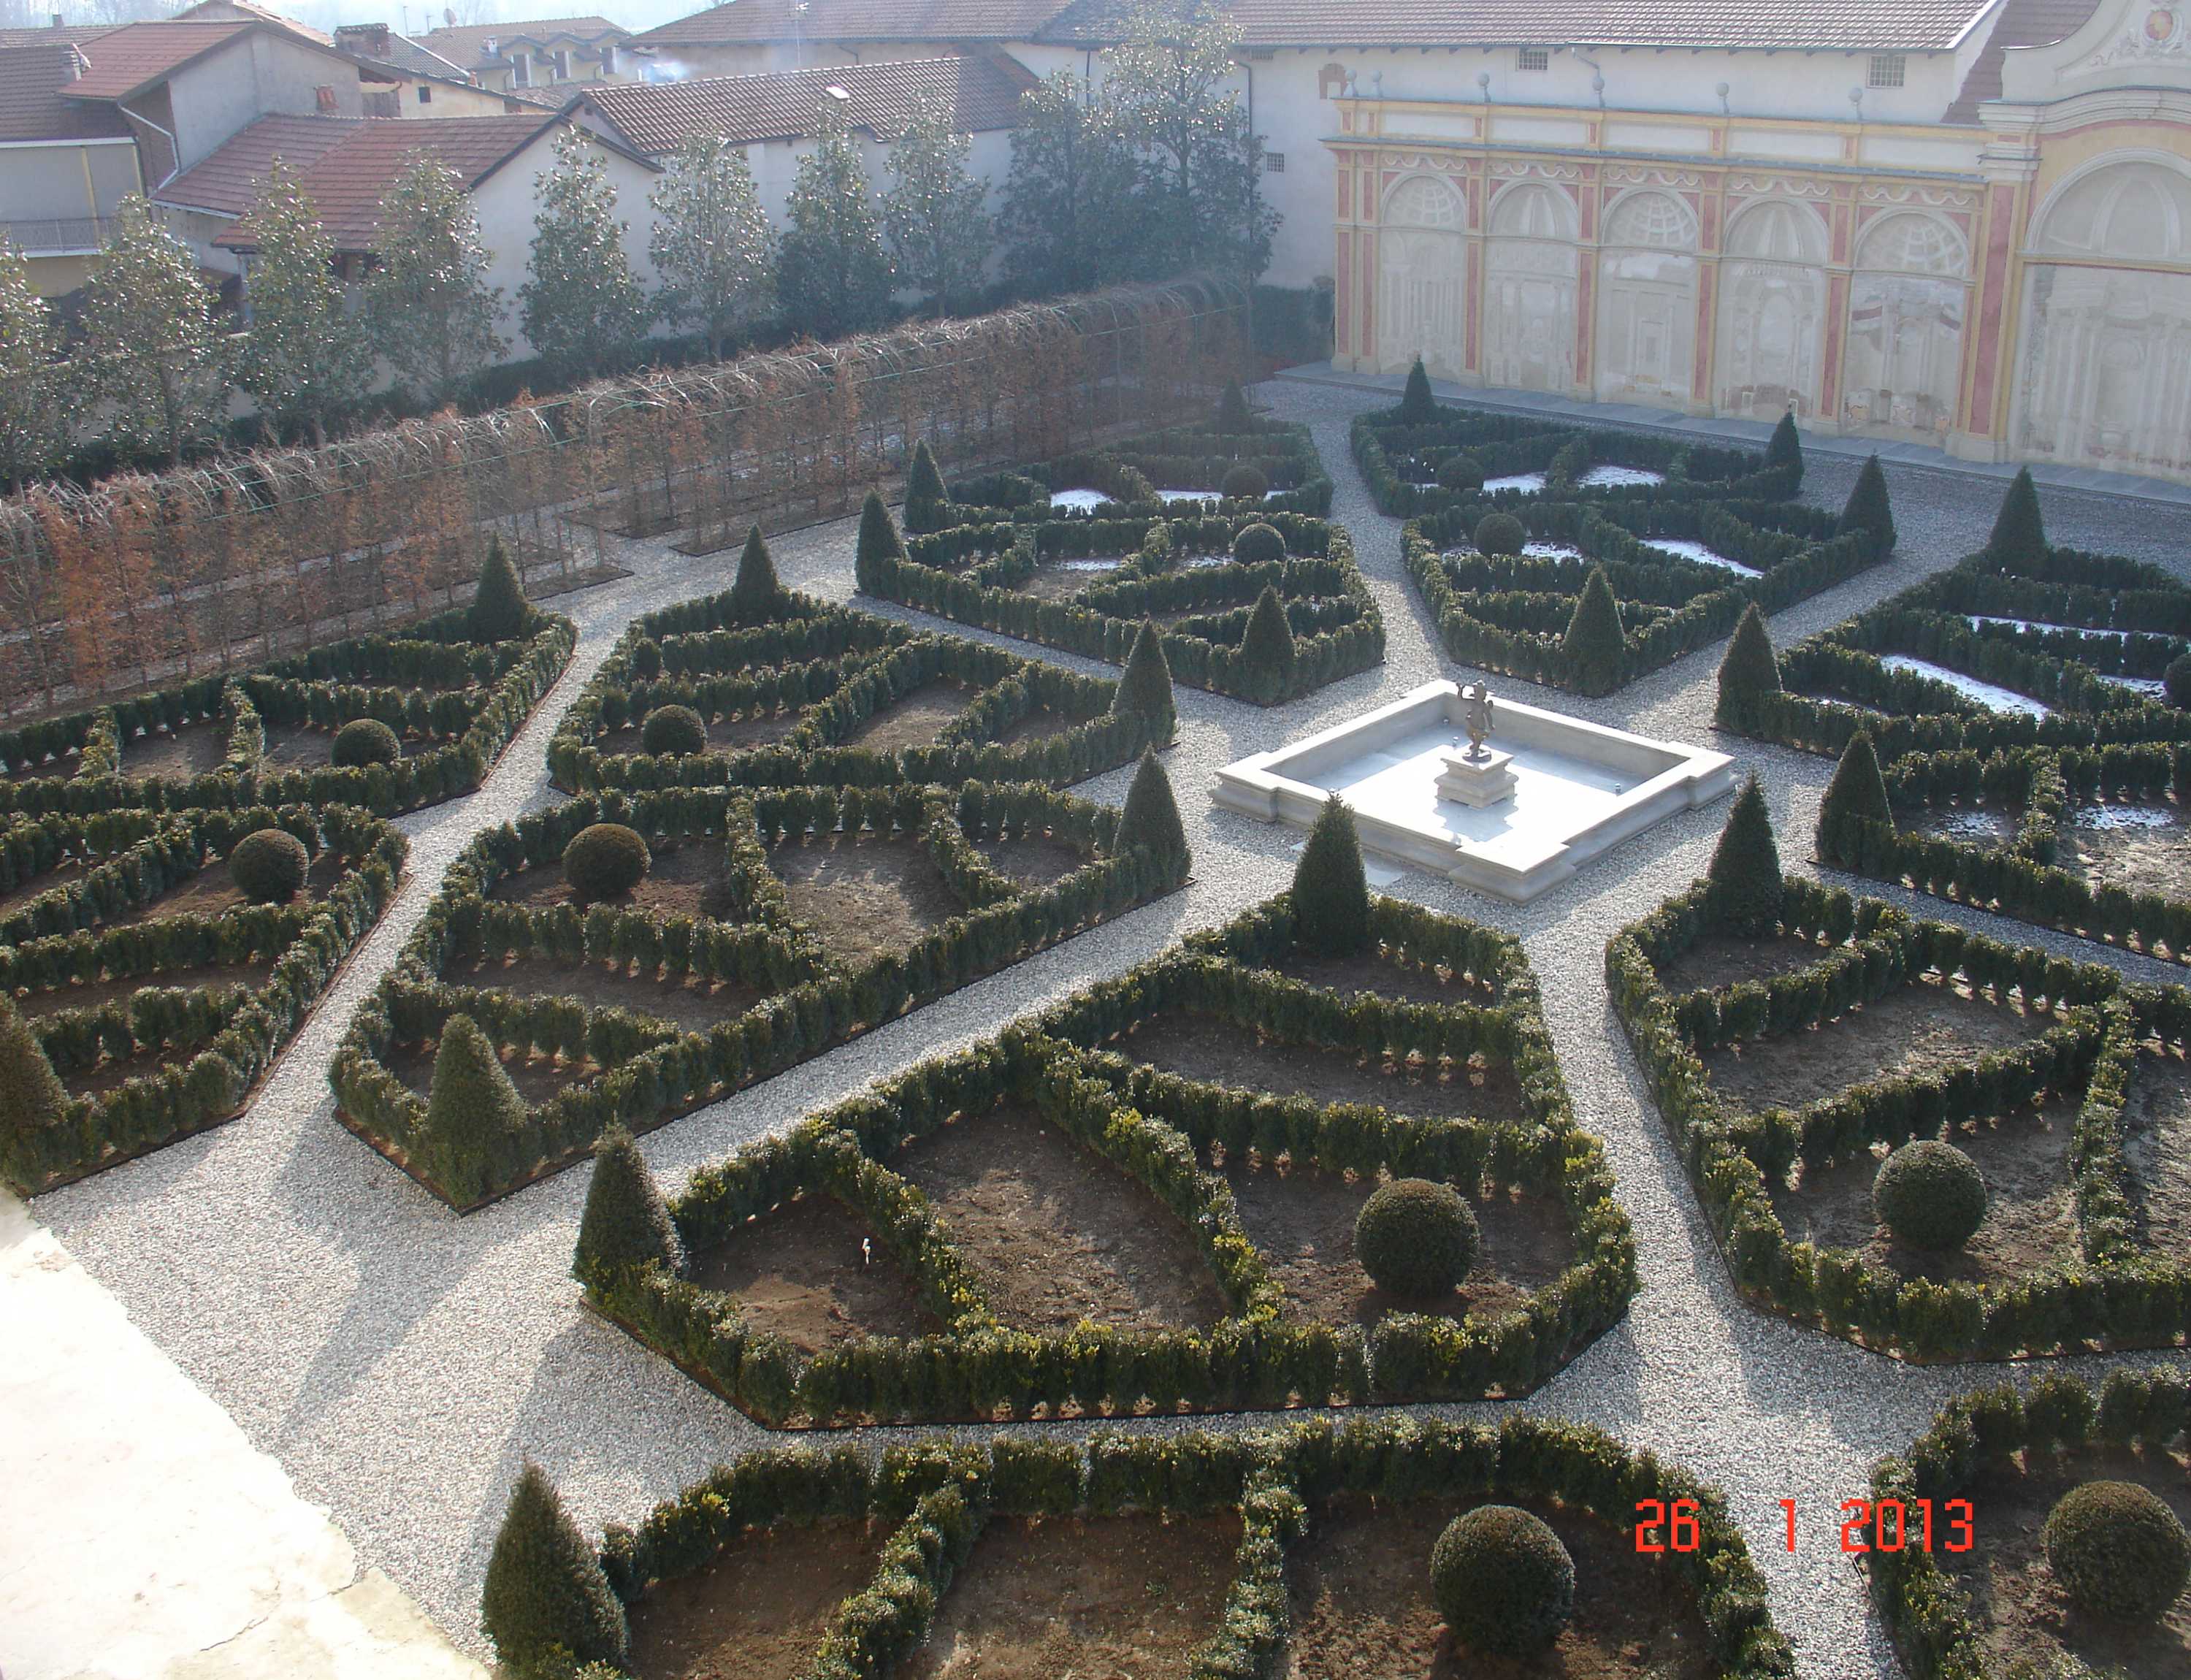 Castello di Grosso - giardino all'italiana fronte castello